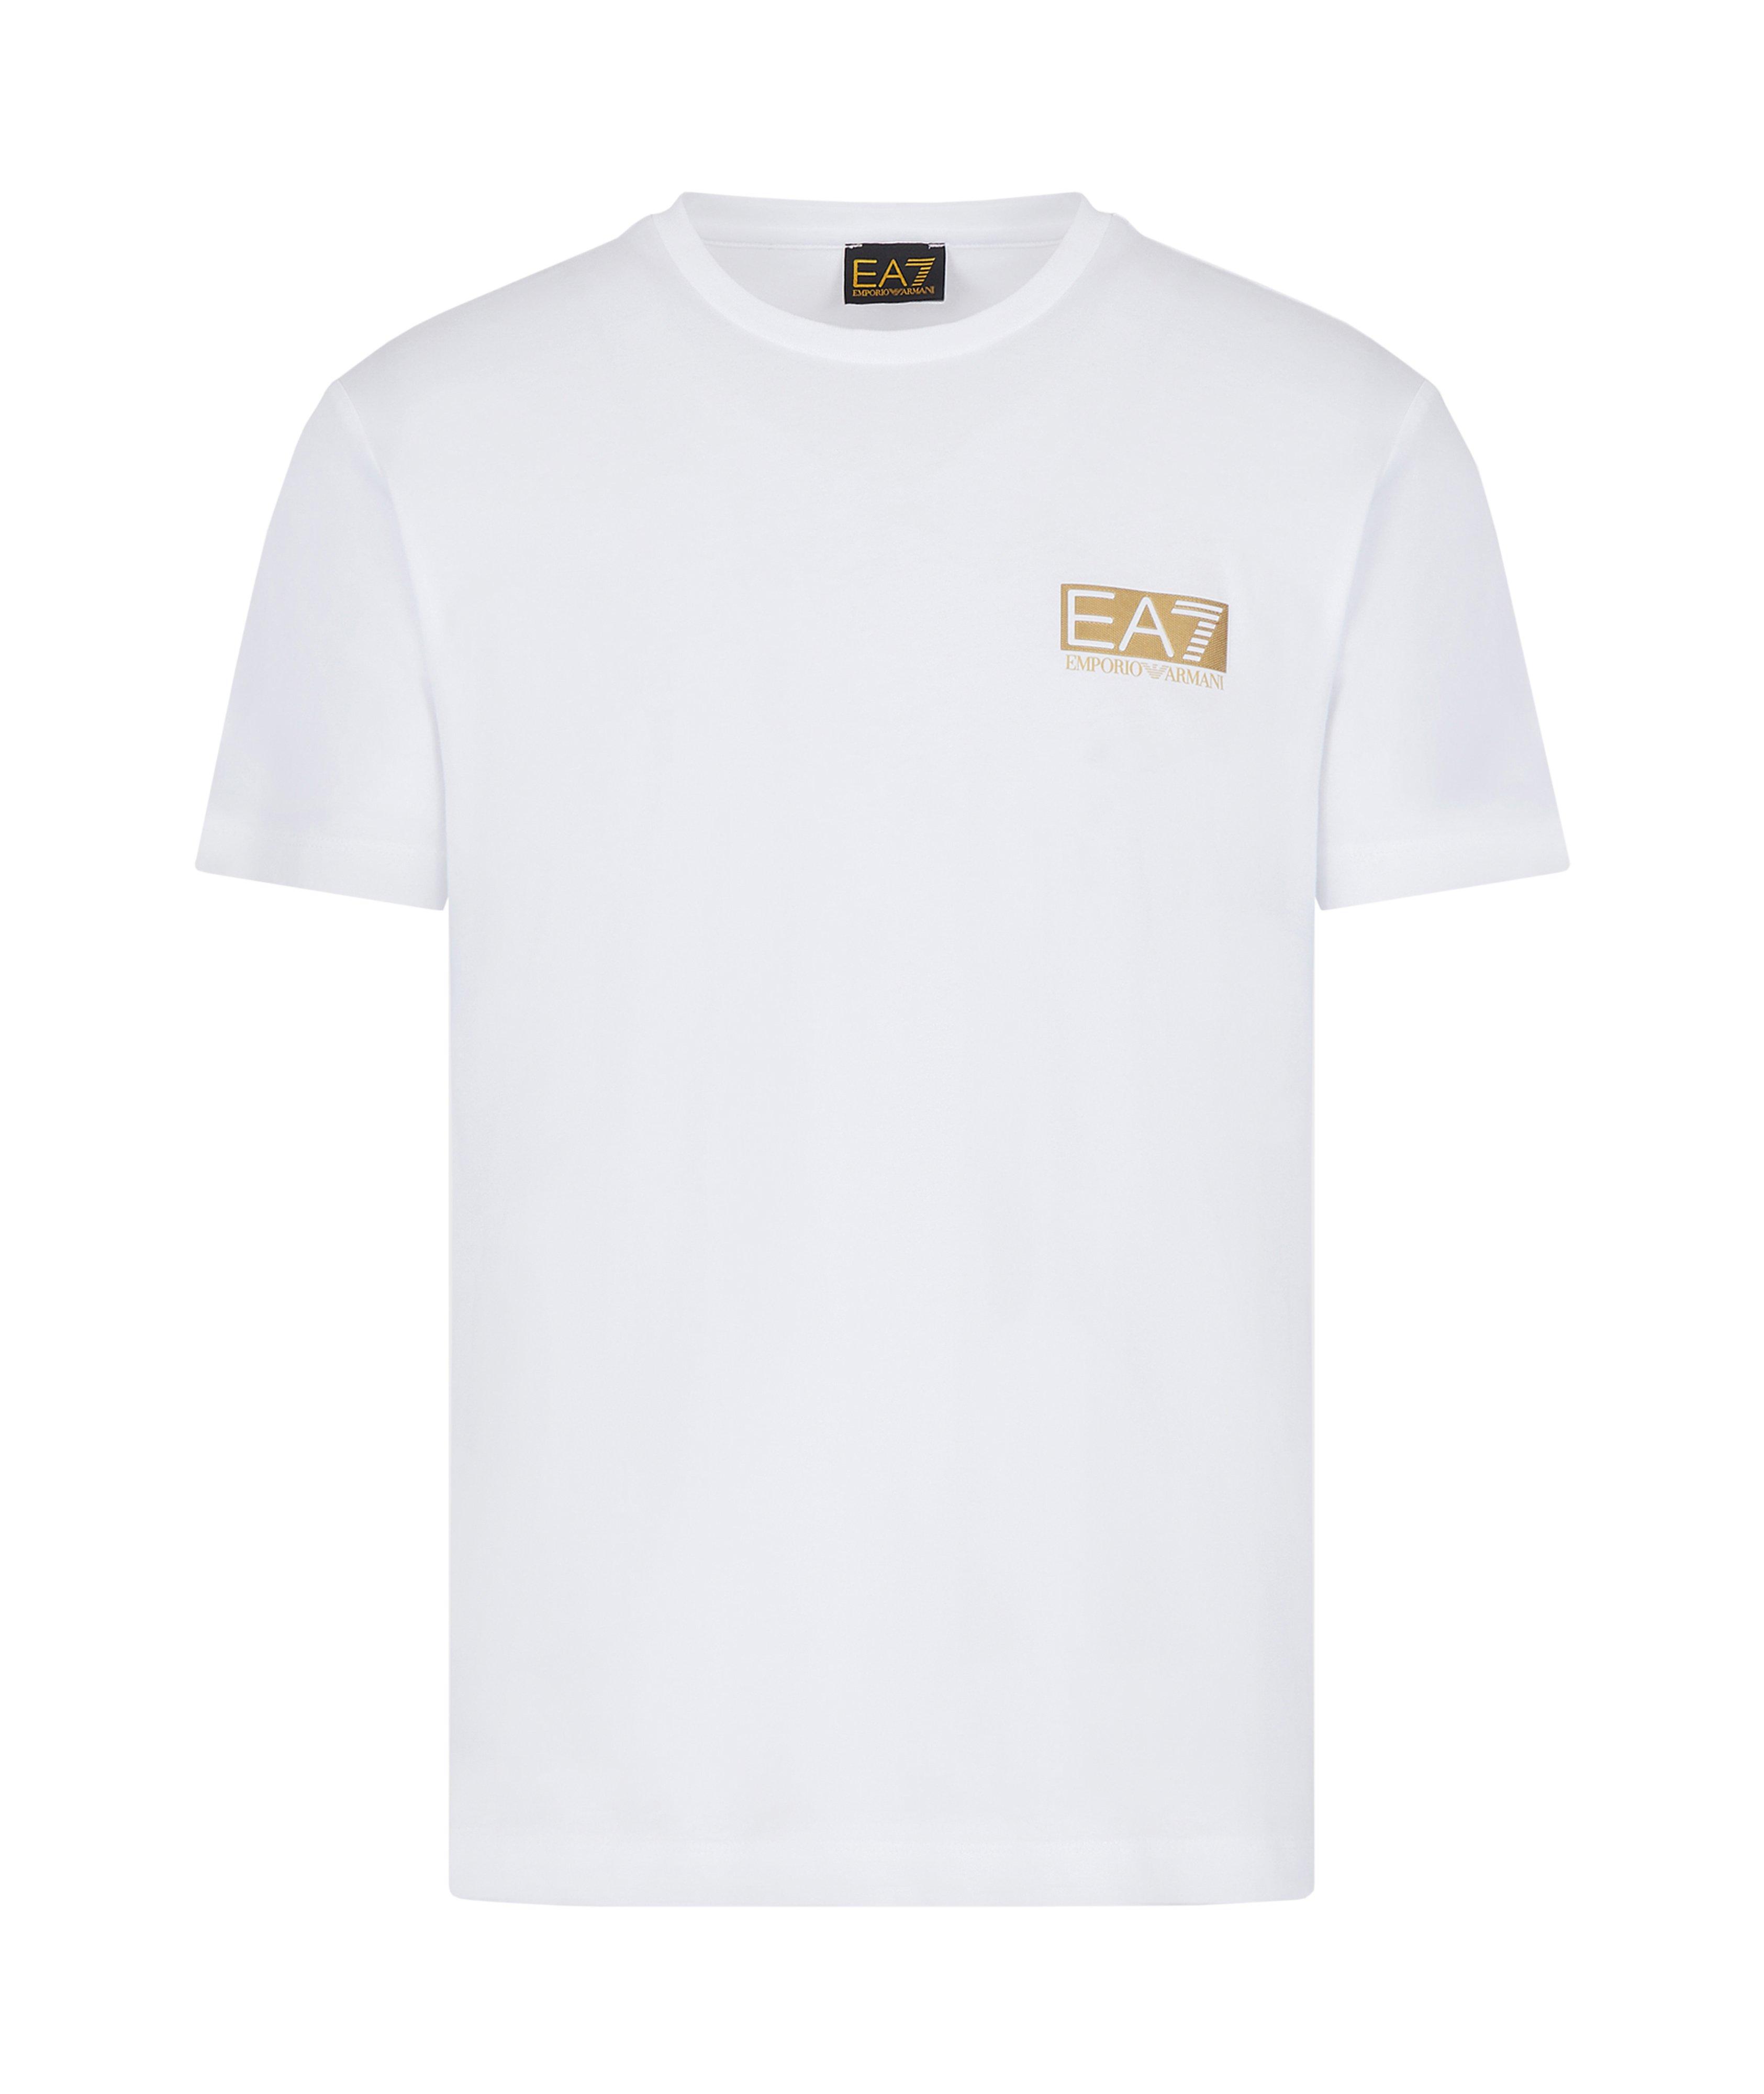 T-shirt en coton, collection EA7 image 0